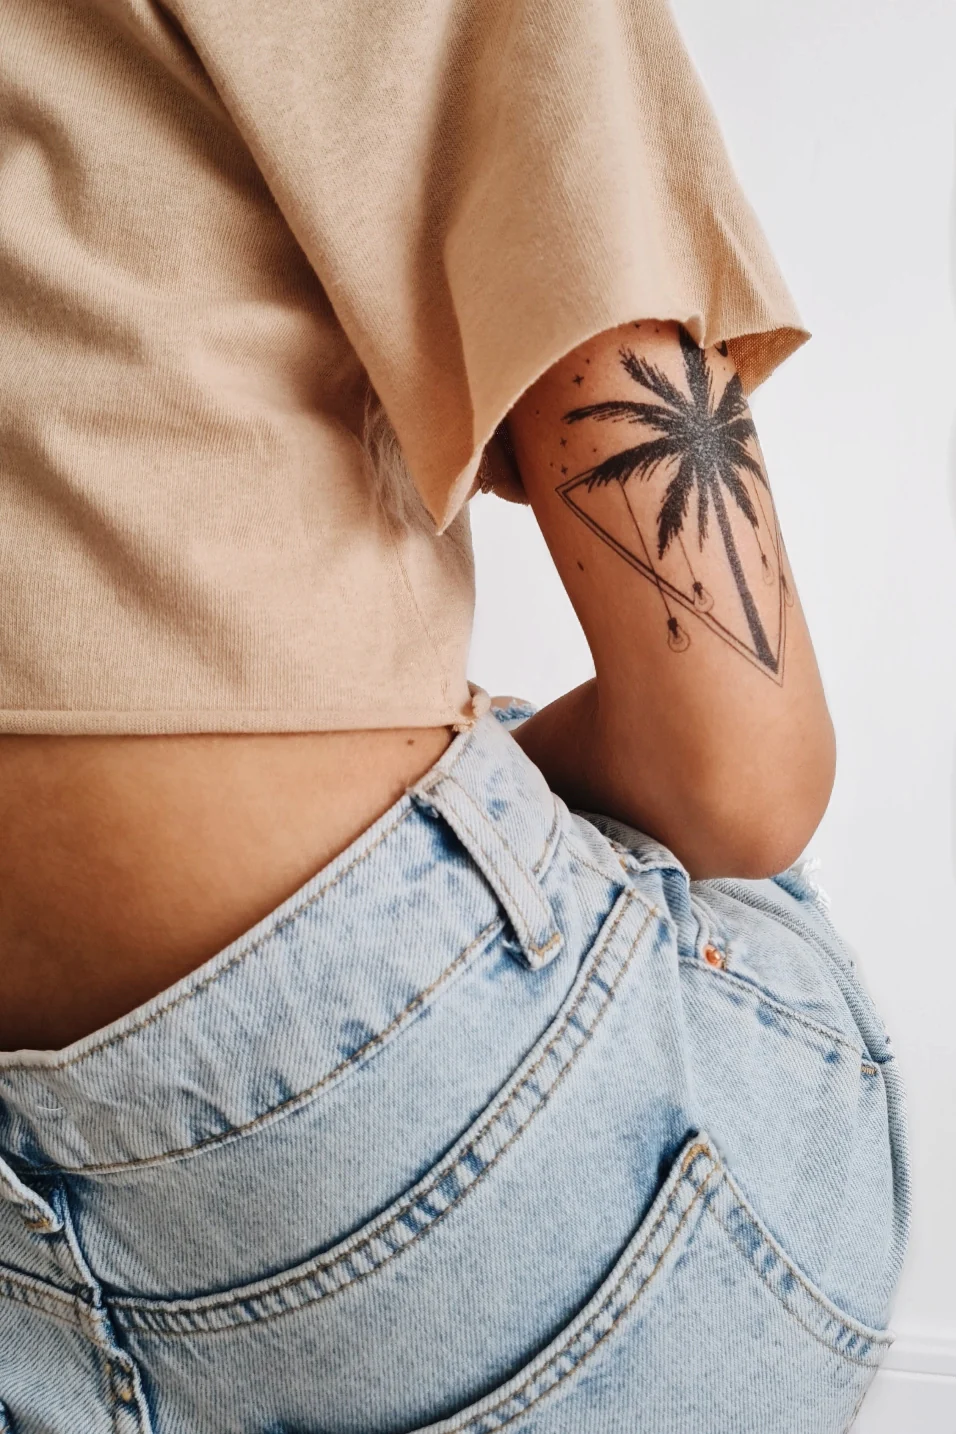 Татуировка пальма